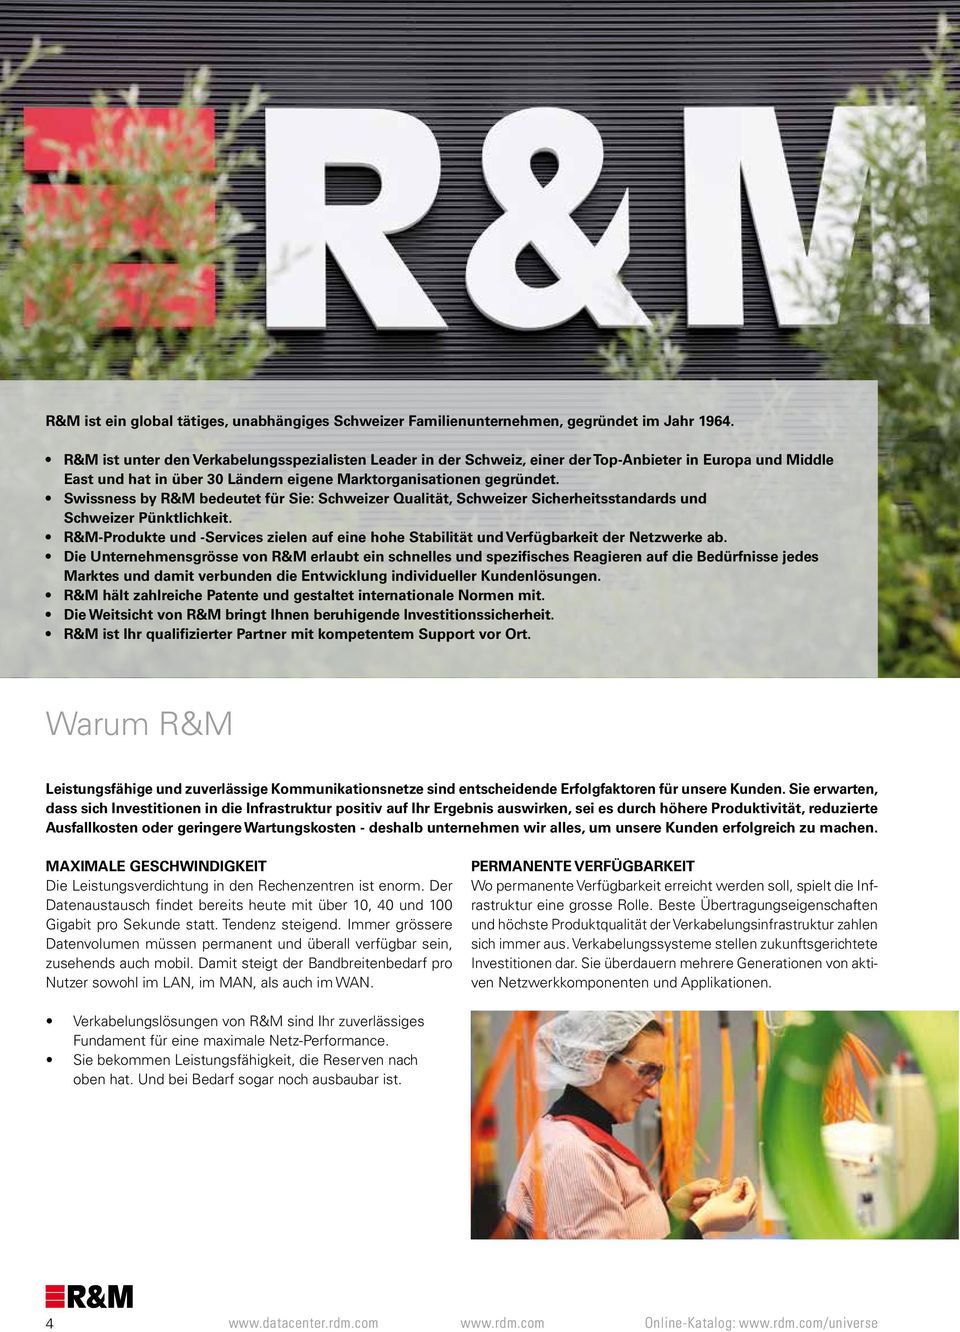 Swissness by R&M bedeutet für Sie: Schweizer Qualität, Schweizer Sicherheitsstandards und Schweizer Pünktlichkeit.